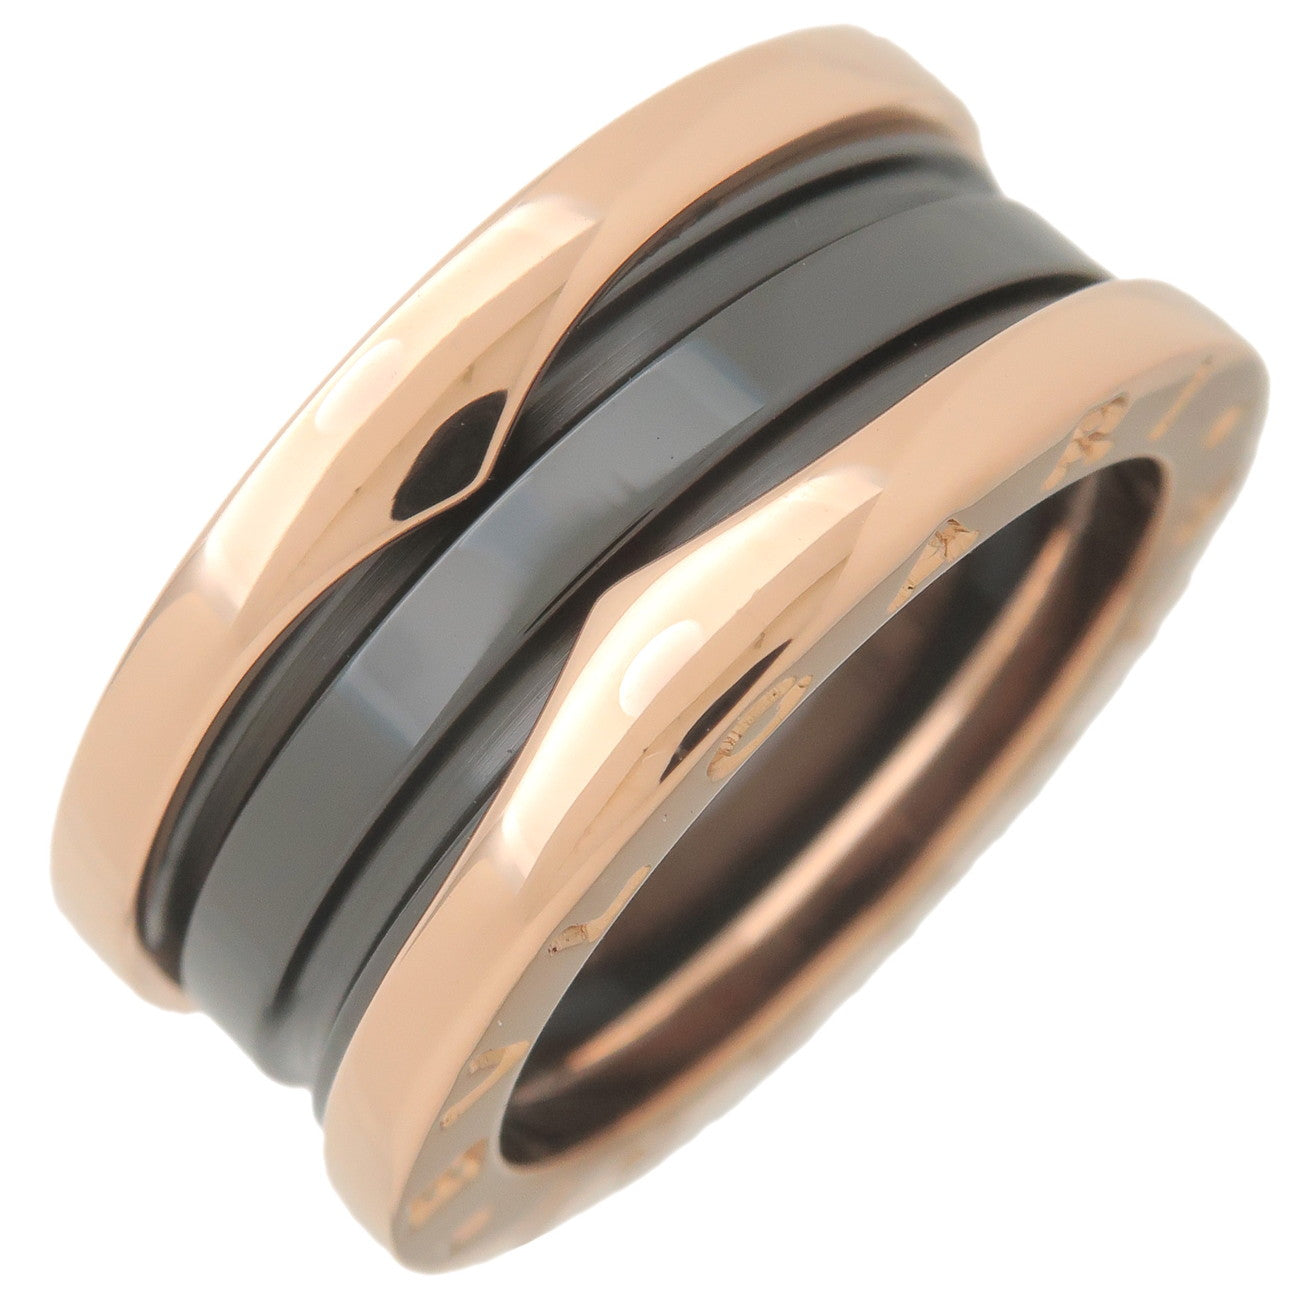 BVLGARI-B-Zero1-Ring-2-Band-K18-Rose-Gold-Black-Ceramic-#50-US5